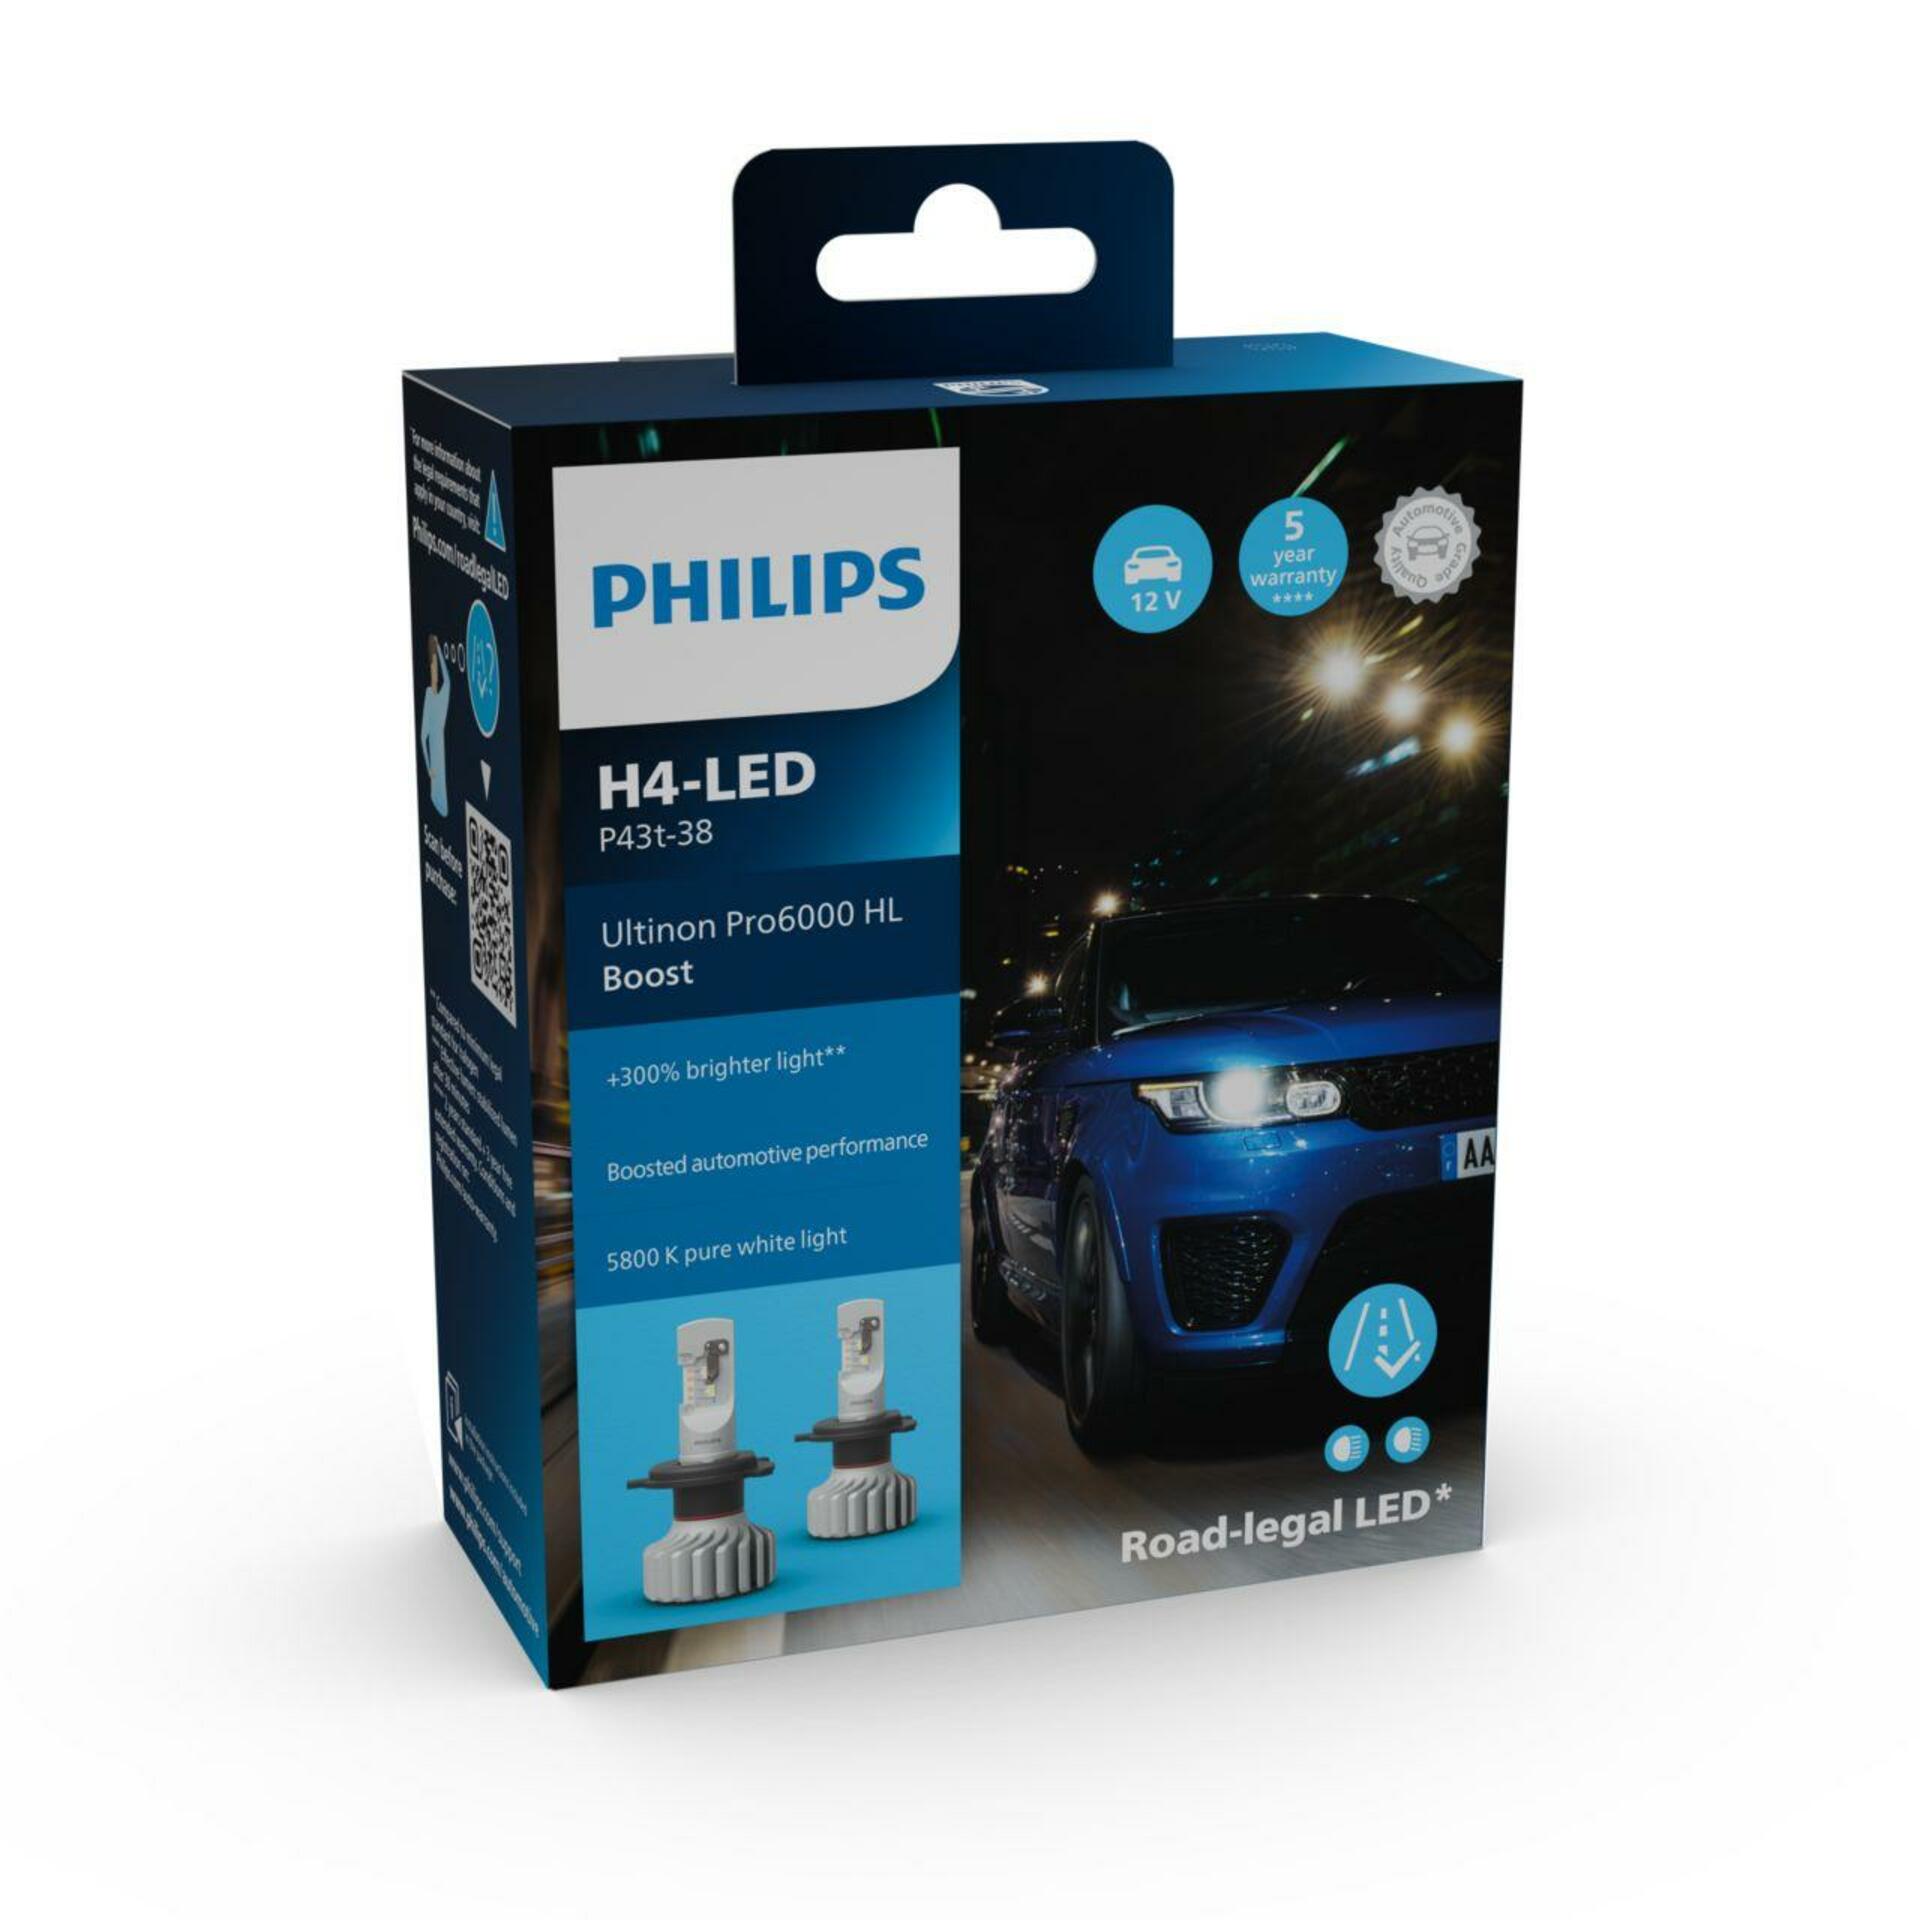 Philips LED H4 12V 18W Ultinon Pro6000 Boost 5800K +300% homologace Německo 2ks 11342U60BX2